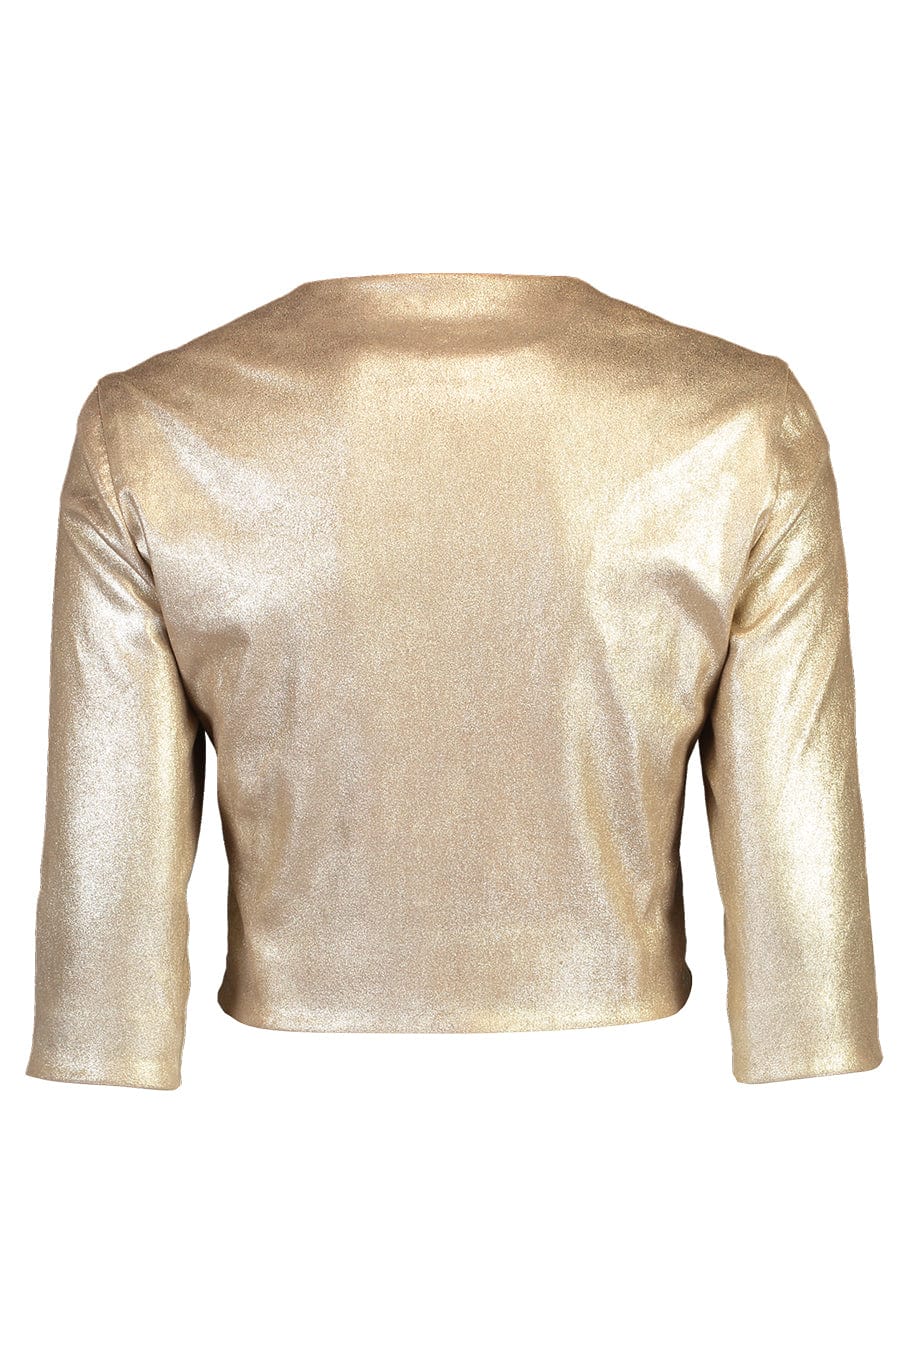 SUSAN BENDER-Stretch Leather Cardigan Jacket - Pale Gold-